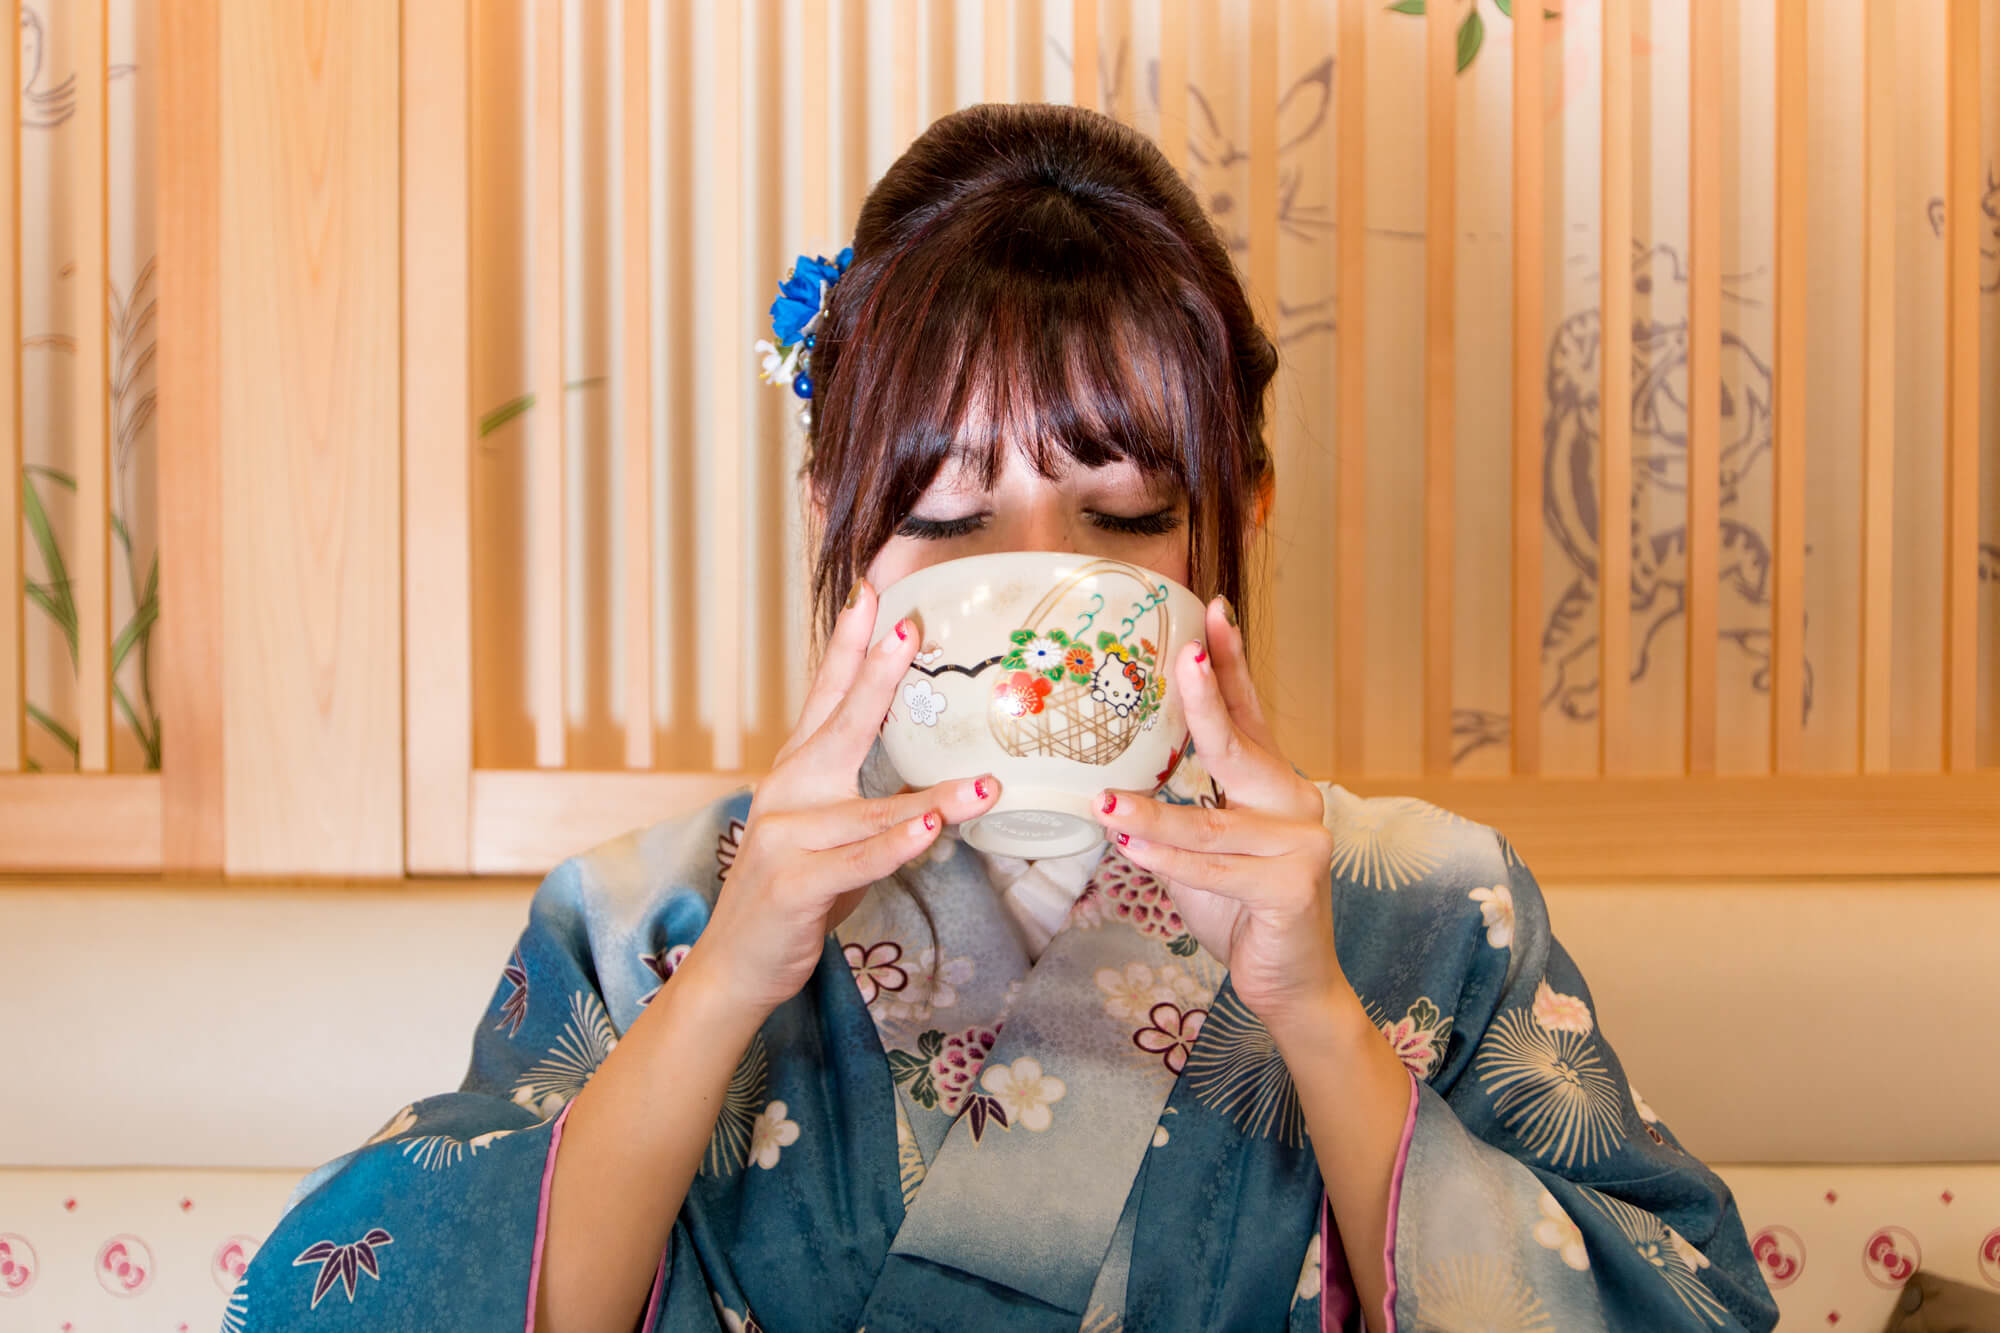 Hello Kitty Saryo (はろうきてぃ茶寮): A Japanese Tea House